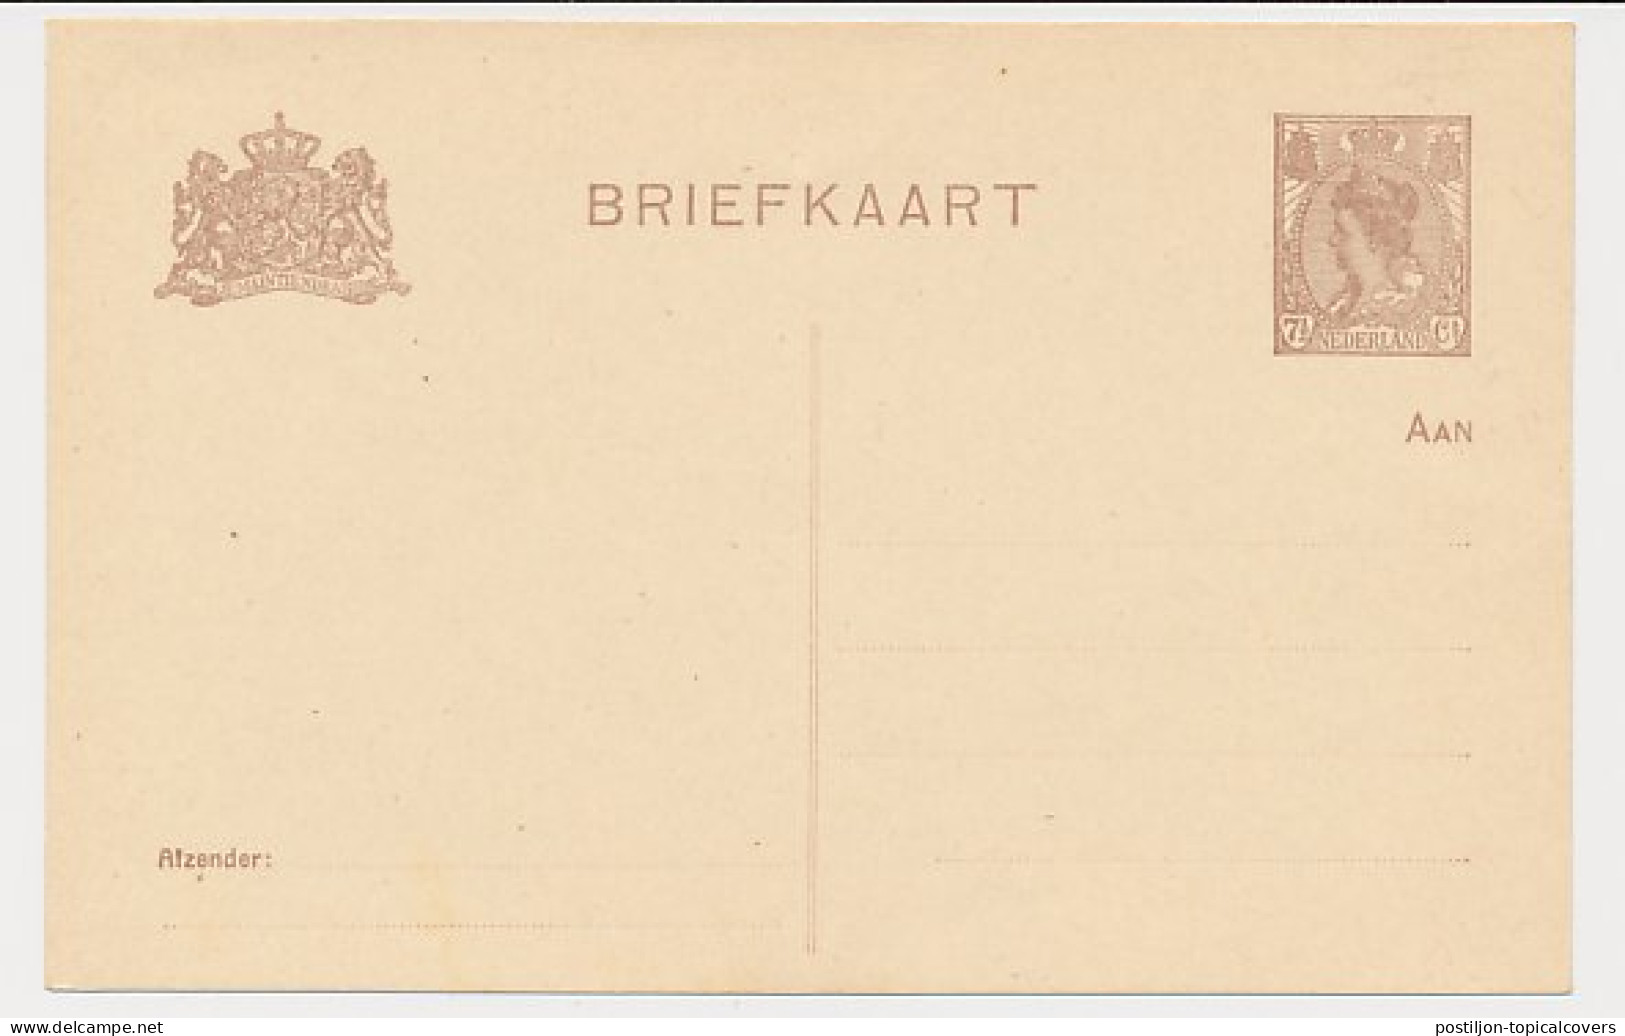 Briefkaart G. 122 I - Entiers Postaux